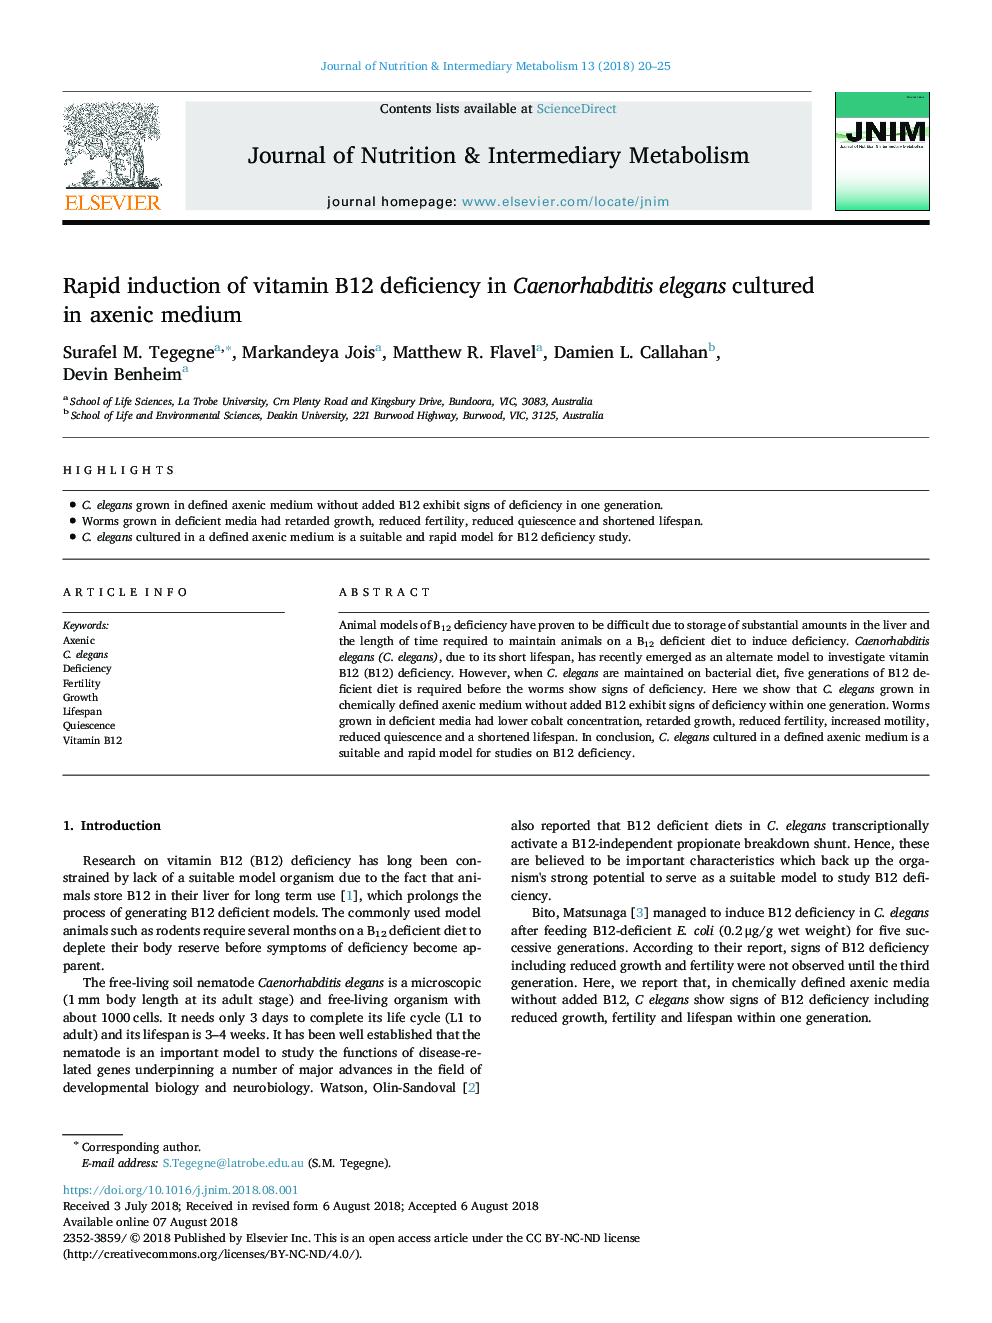 Rapid induction of vitamin B12 deficiency in Caenorhabditis elegans cultured in axenic medium